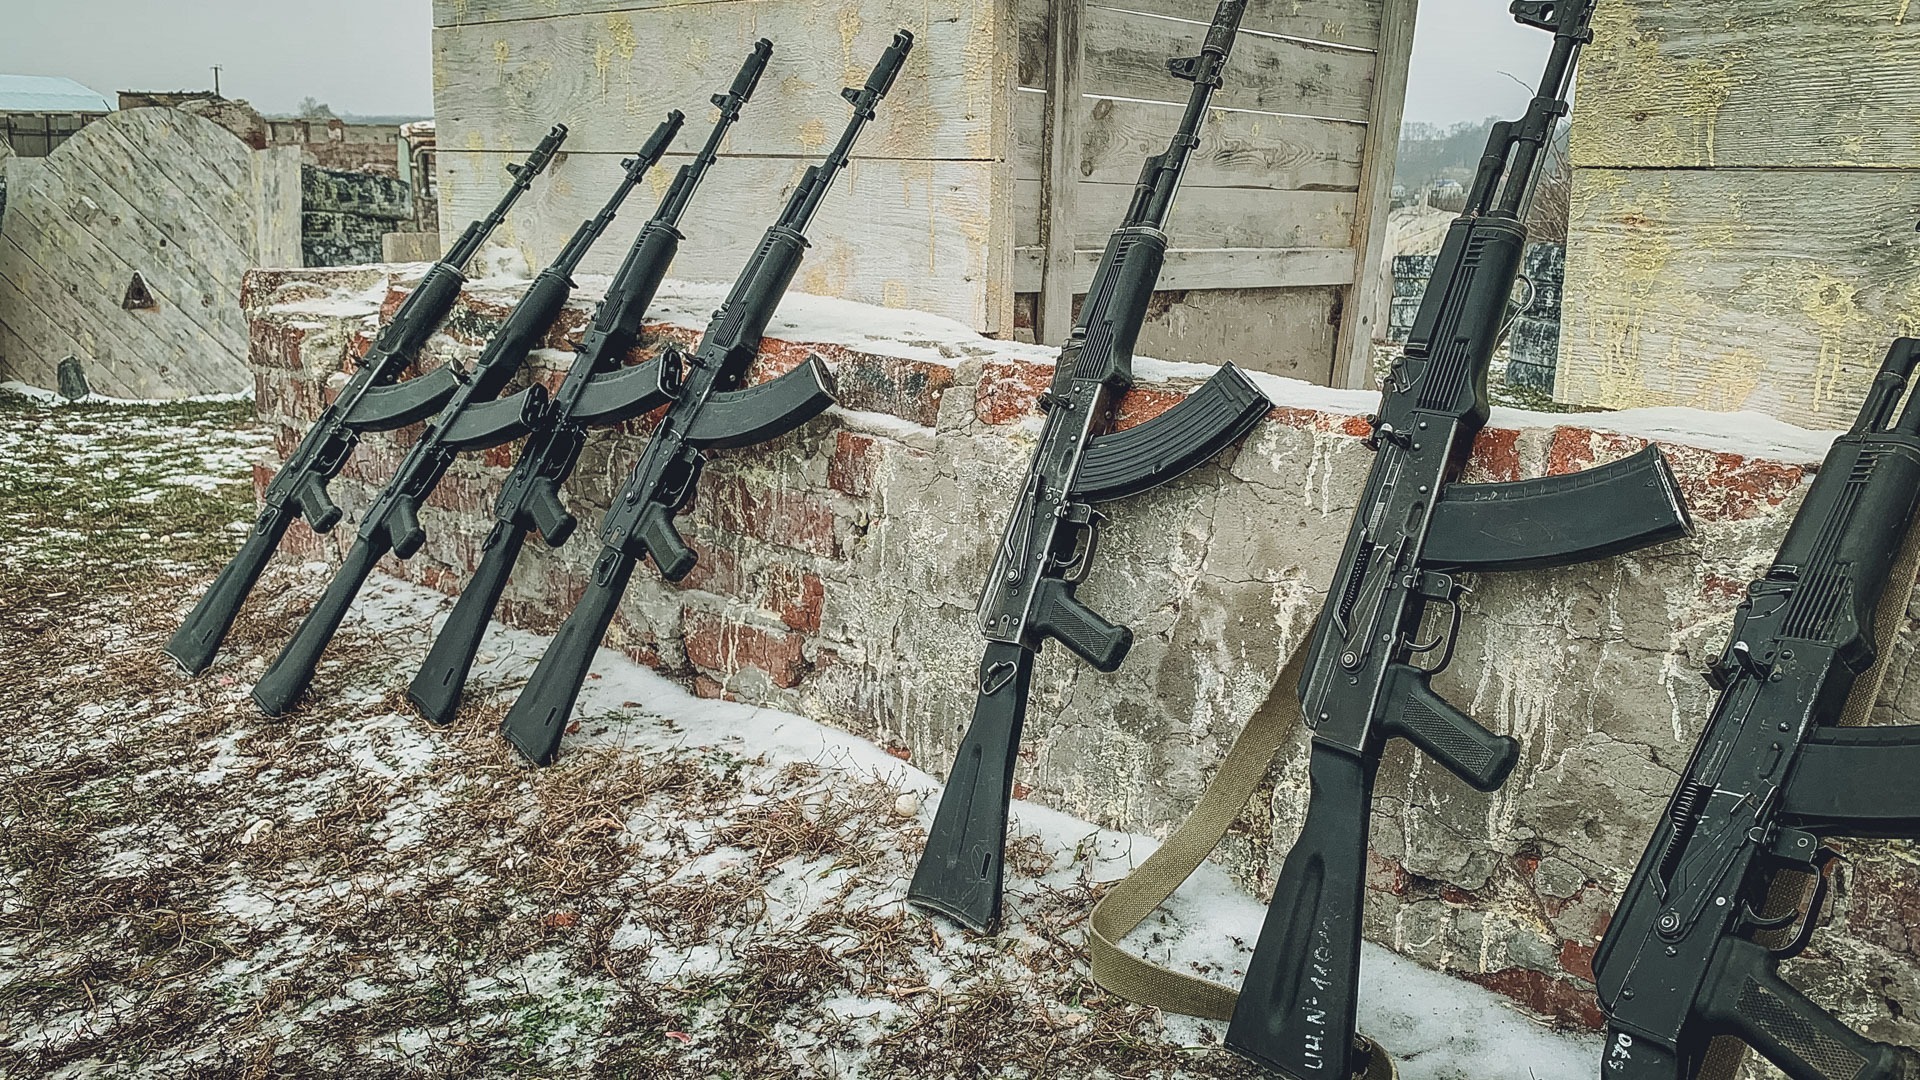 Порядка 400 единиц оружия закупят для участников белгородской самообороны